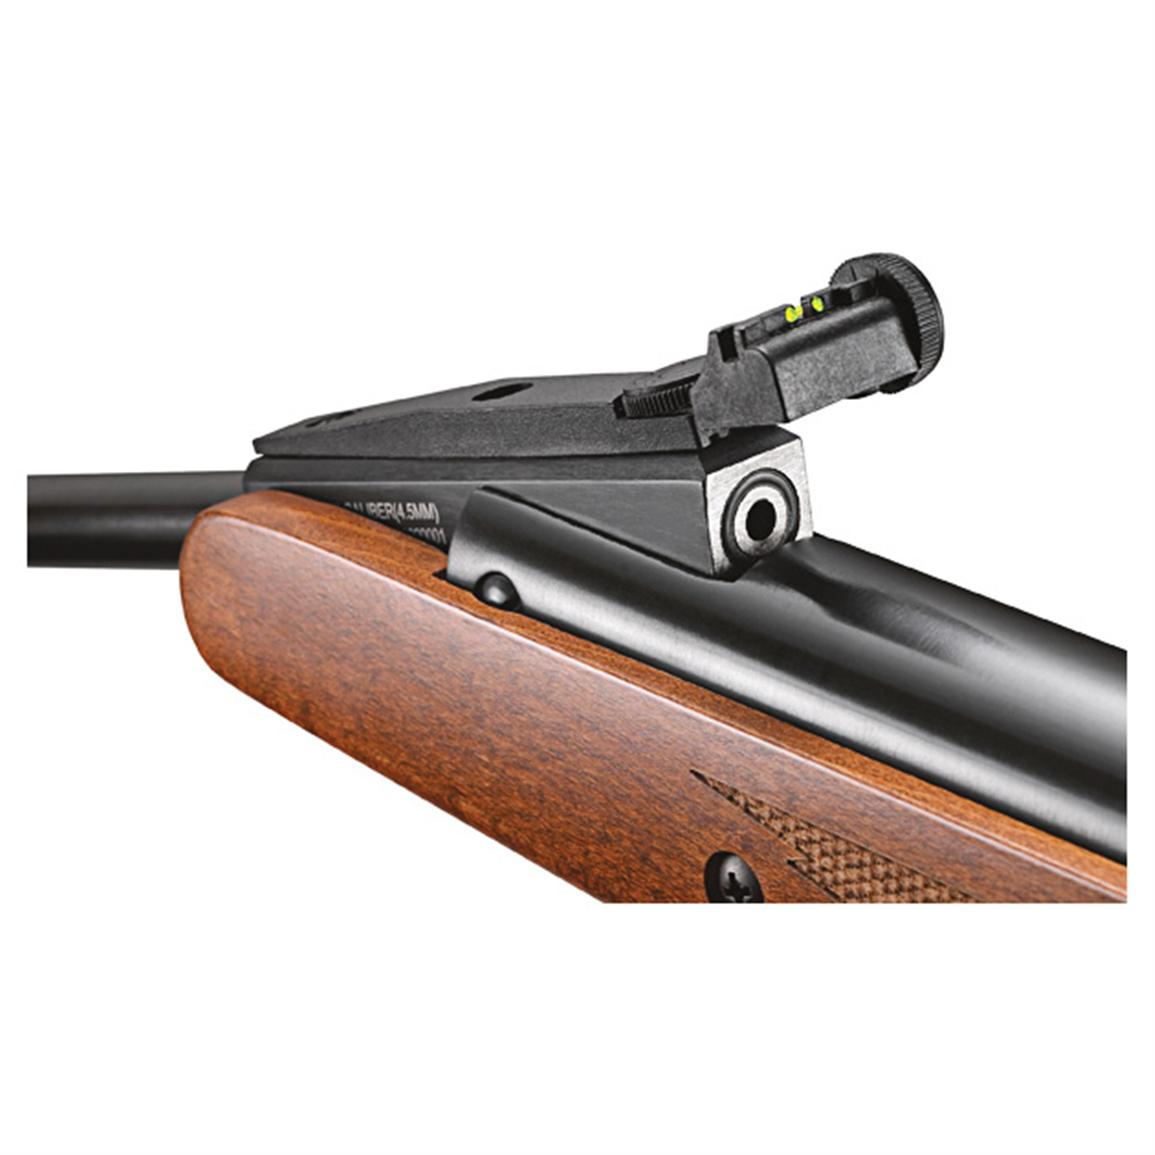 Remington  Express  Air  Rifle  584174 Air  BB Rifles  at 